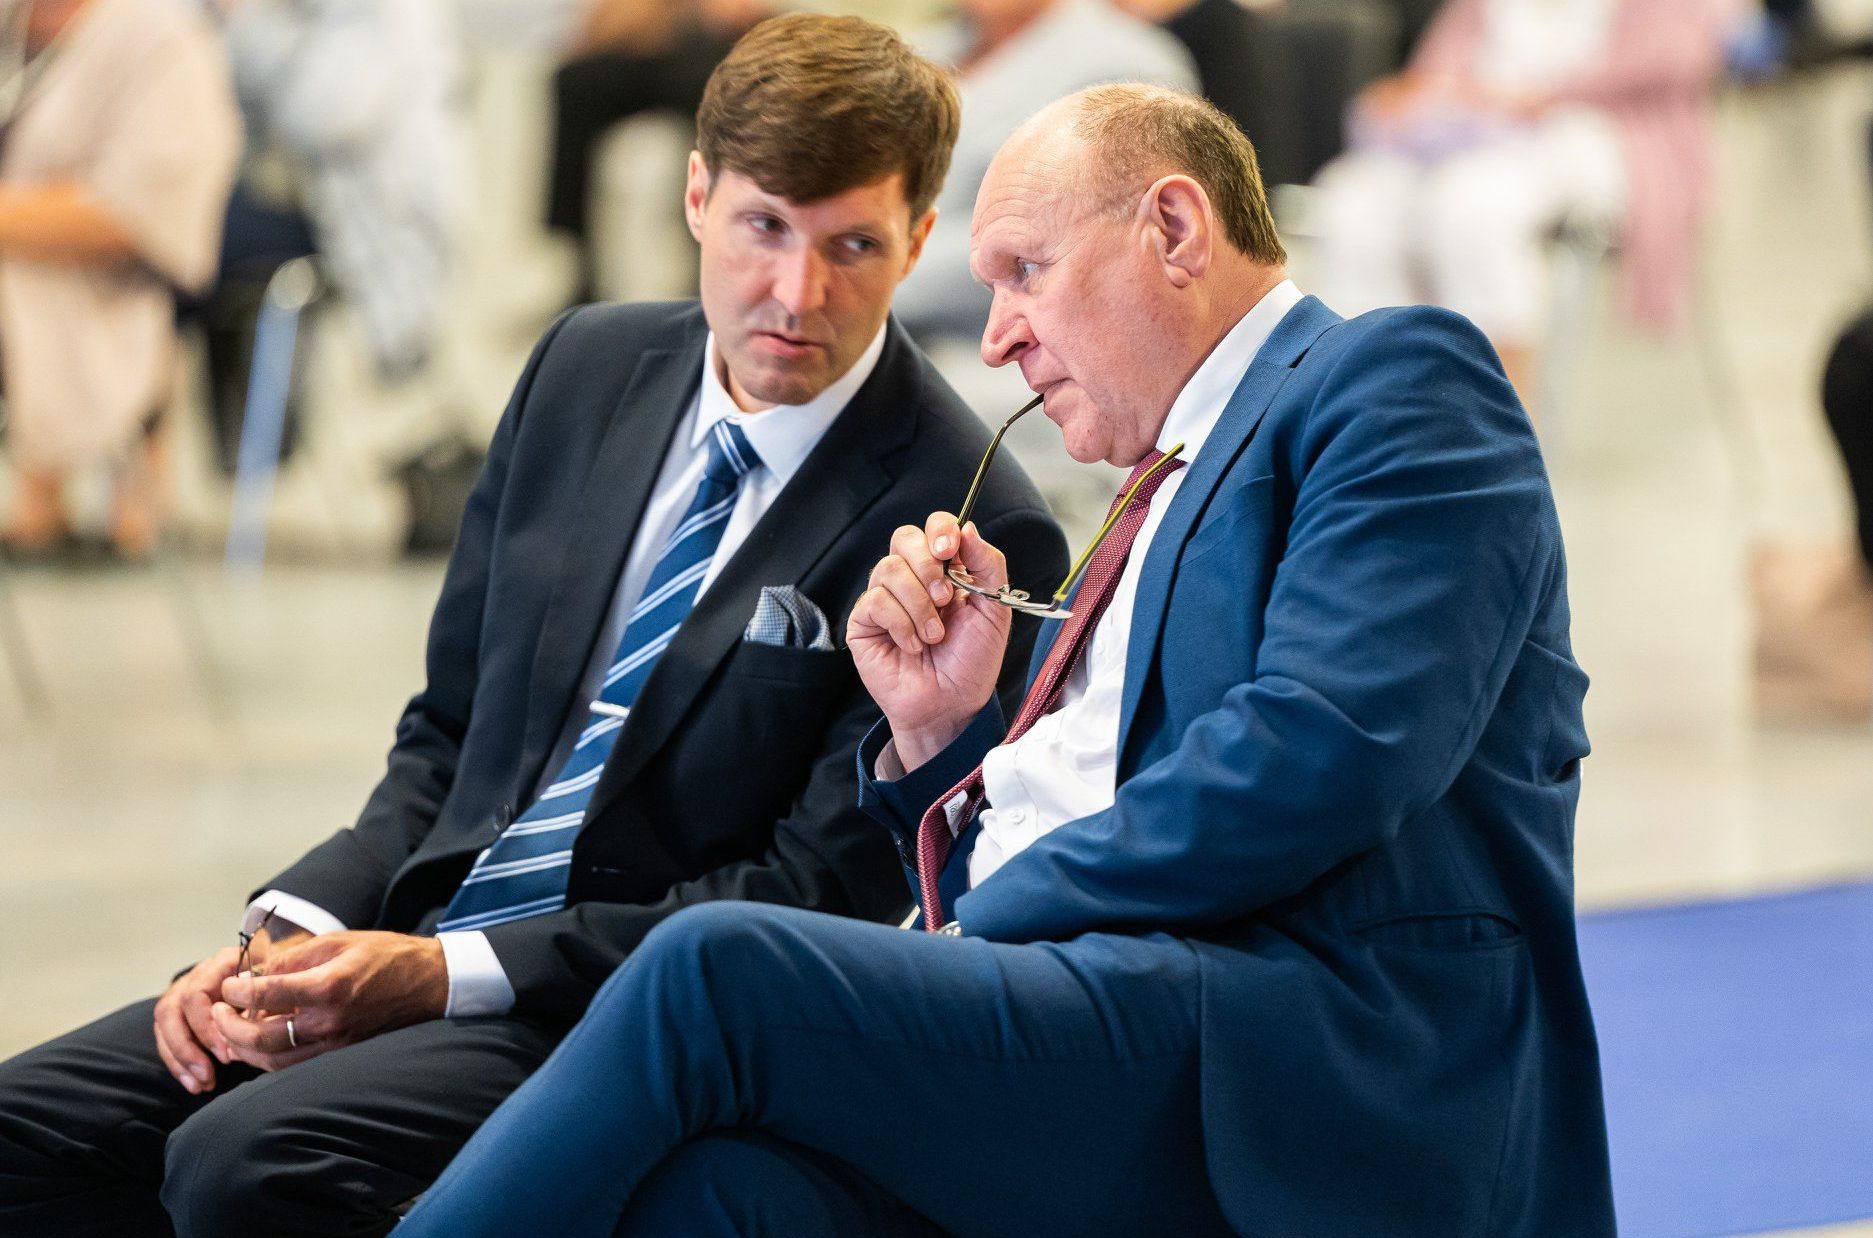 Март и Мартин Хельме на съезде Эстонской консервативной народной партии (EKRE) в Таллине, 4 июля 2020